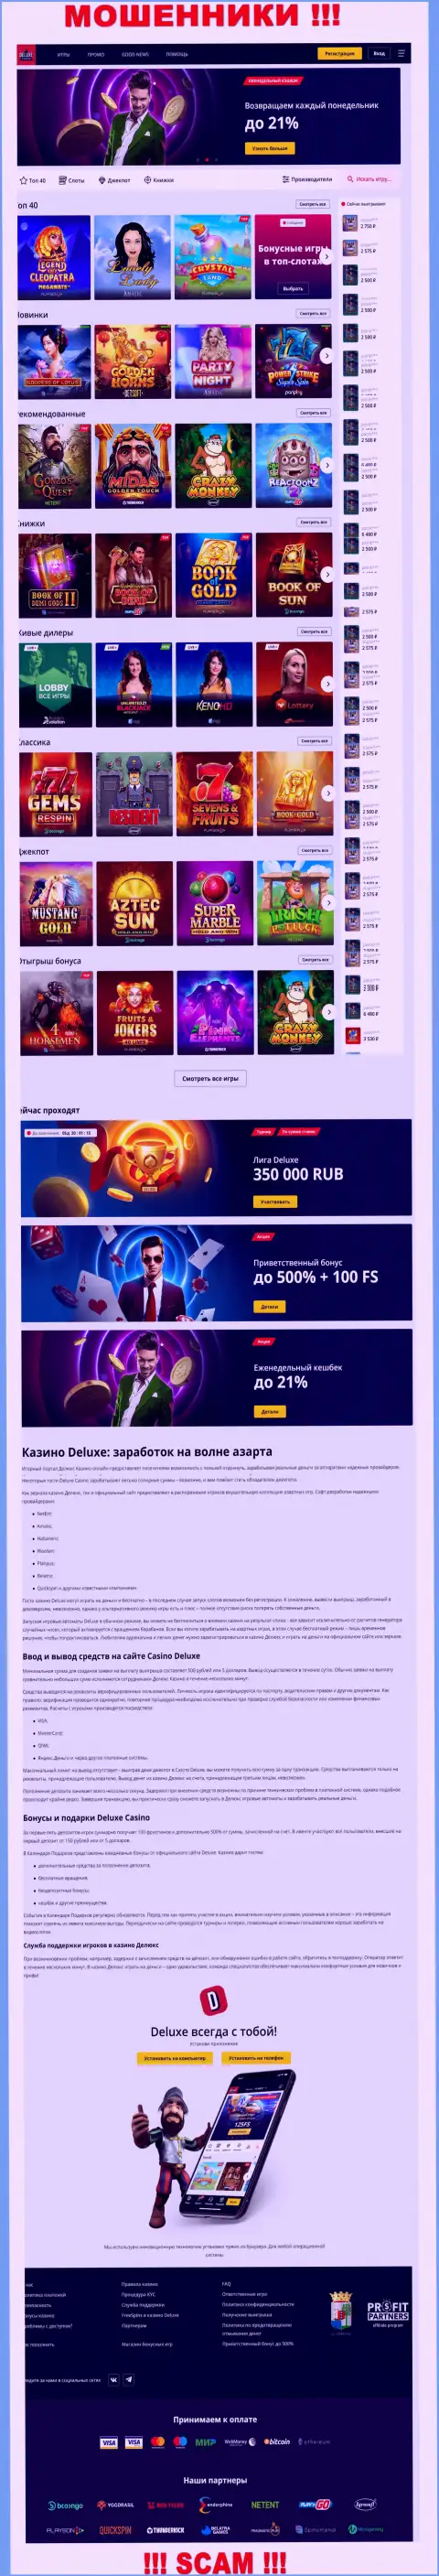 Официальная internet страница компании ДелюксКазино